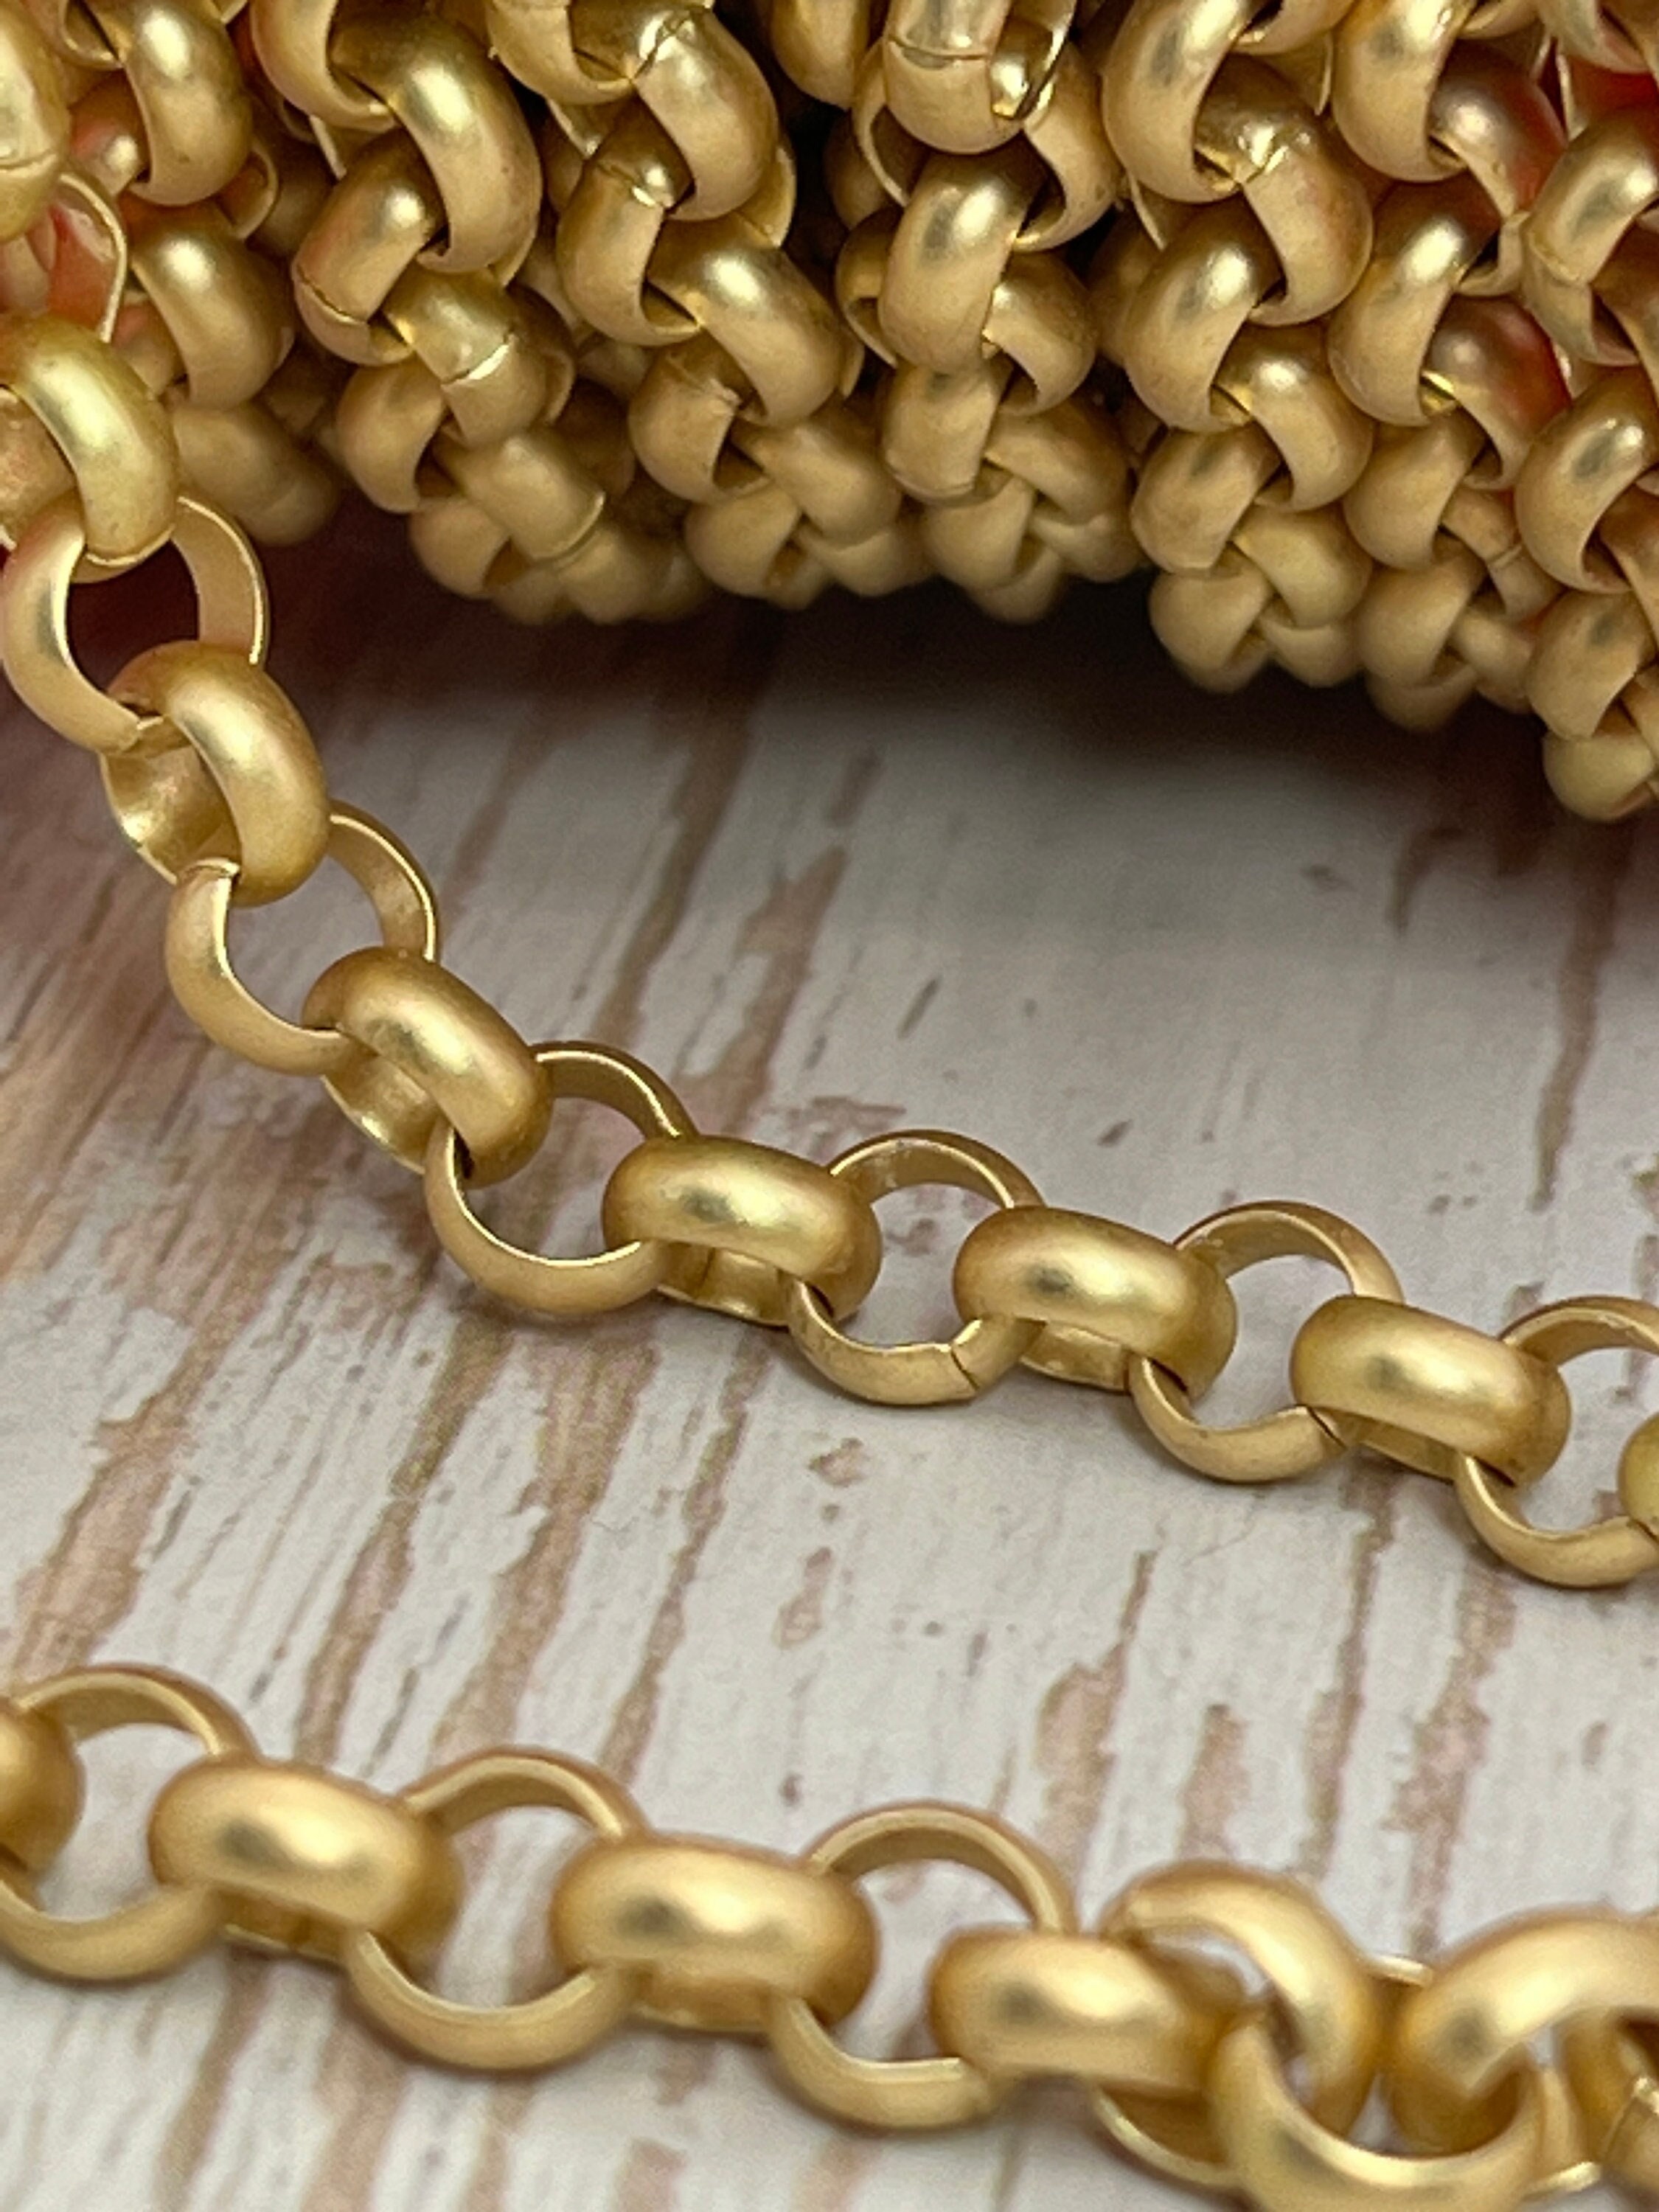 Men's Modern 13mm 14K Yellow Gold 9.00 Textured Curb Cuban Link Chain